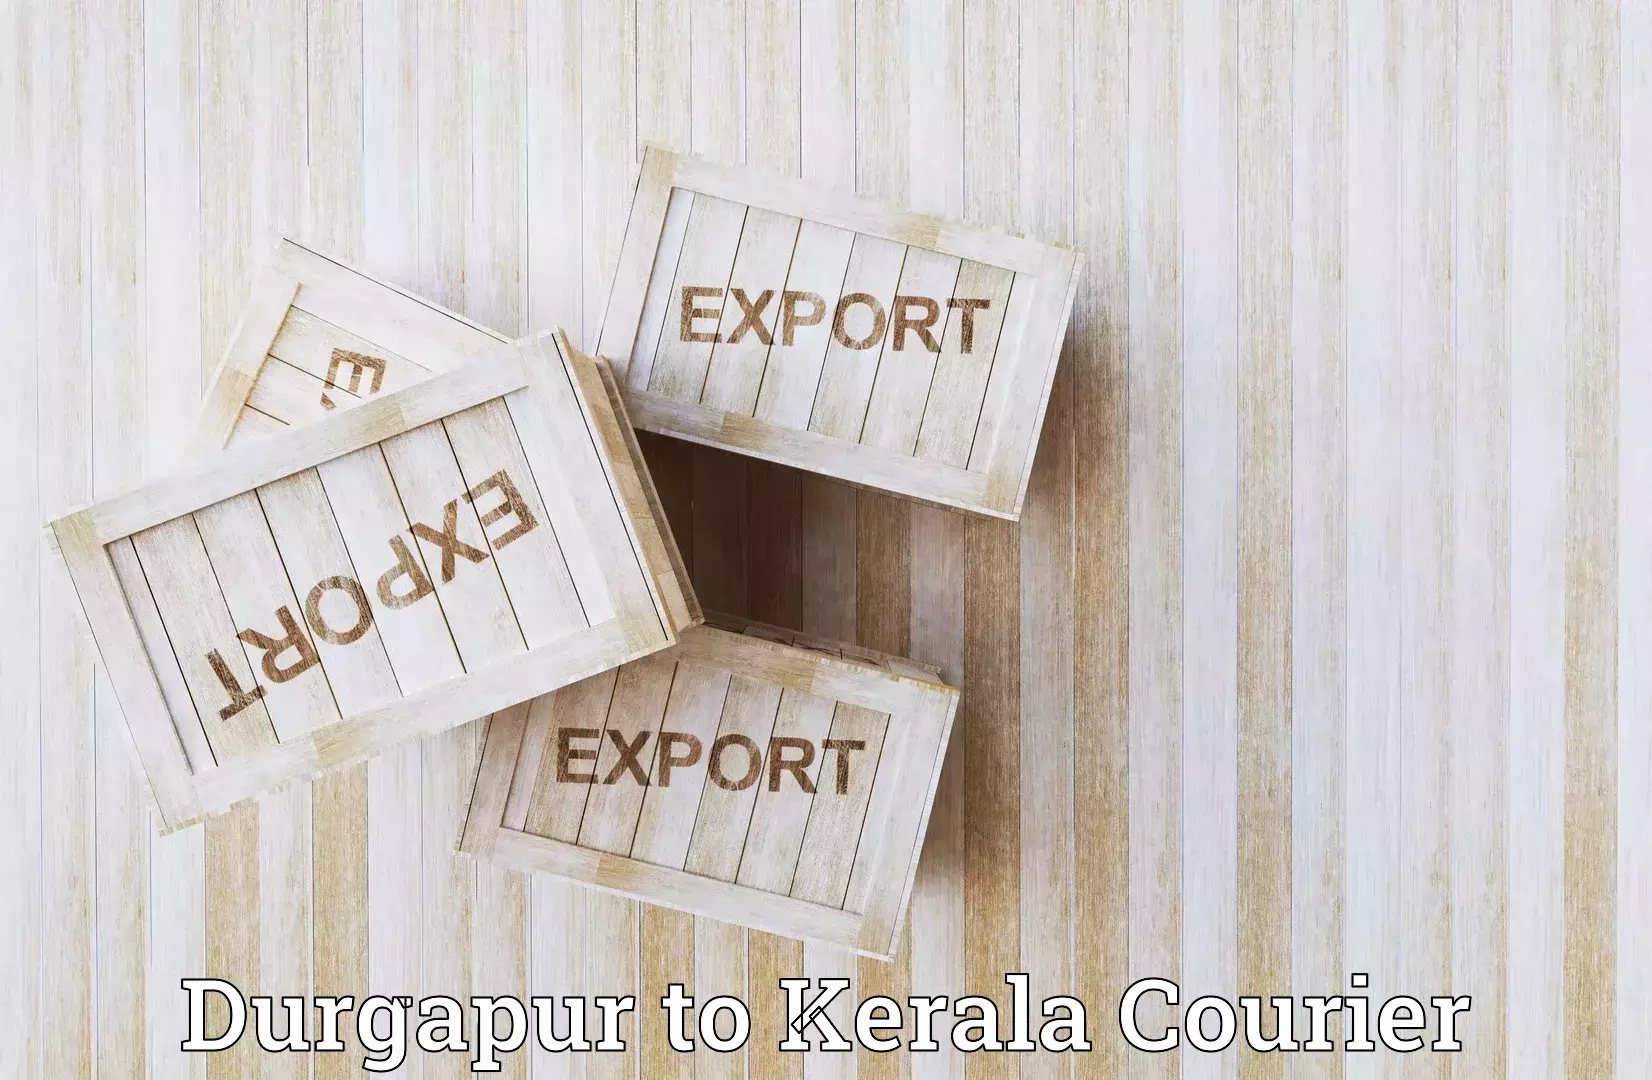 Efficient logistics management Durgapur to Manjeri